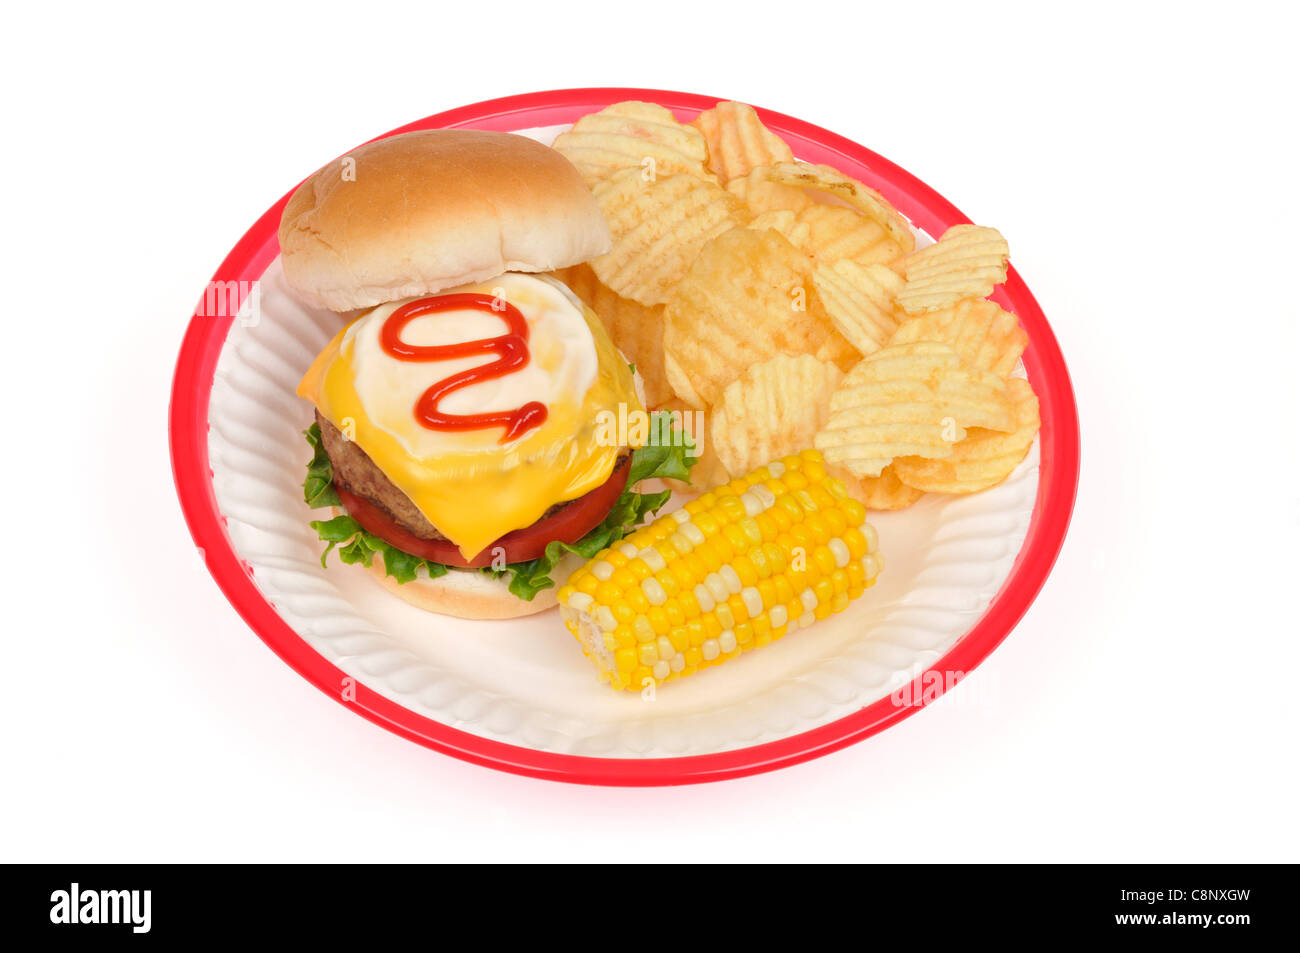 La Turchia burger con formaggio, lattuga e pomodoro condito con la maionese e ketchup in pane & sulla pannocchia di mais e crsips su sfondo bianco. Foto Stock